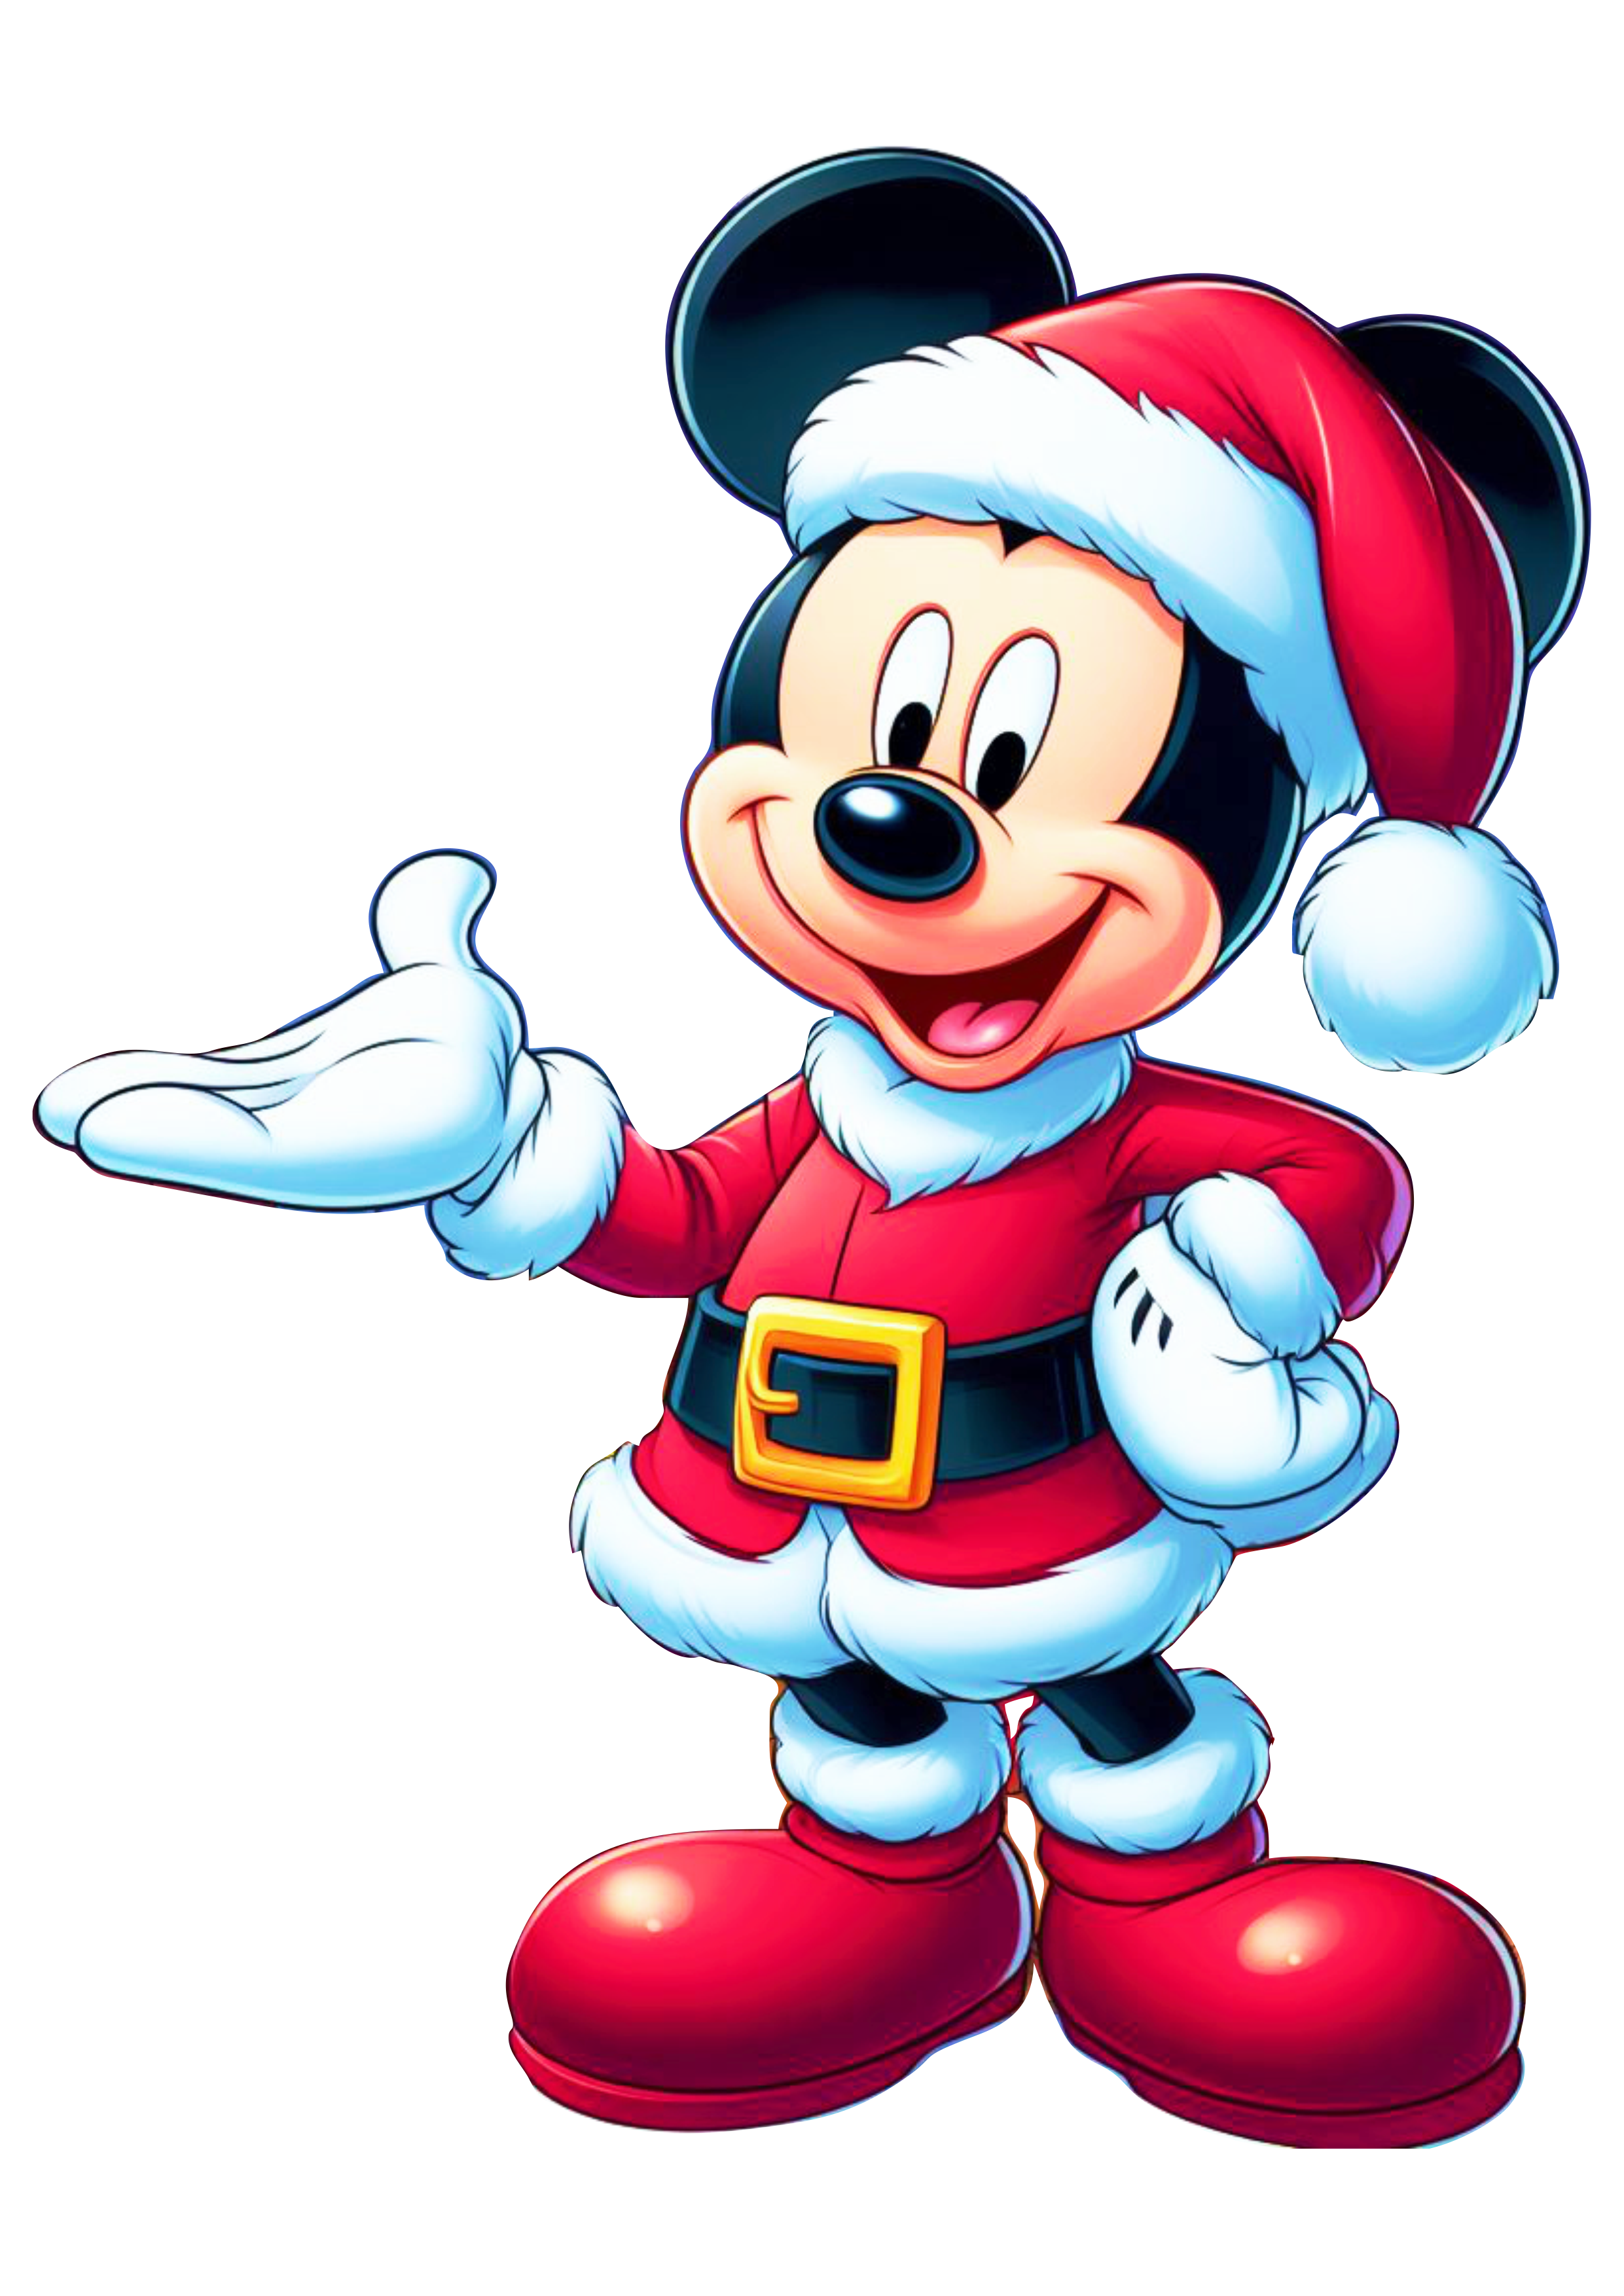 Disney kids Mickey Mouse fantasiado de Papai Noel desenho infatil presentes de natal ilustração assistir online png